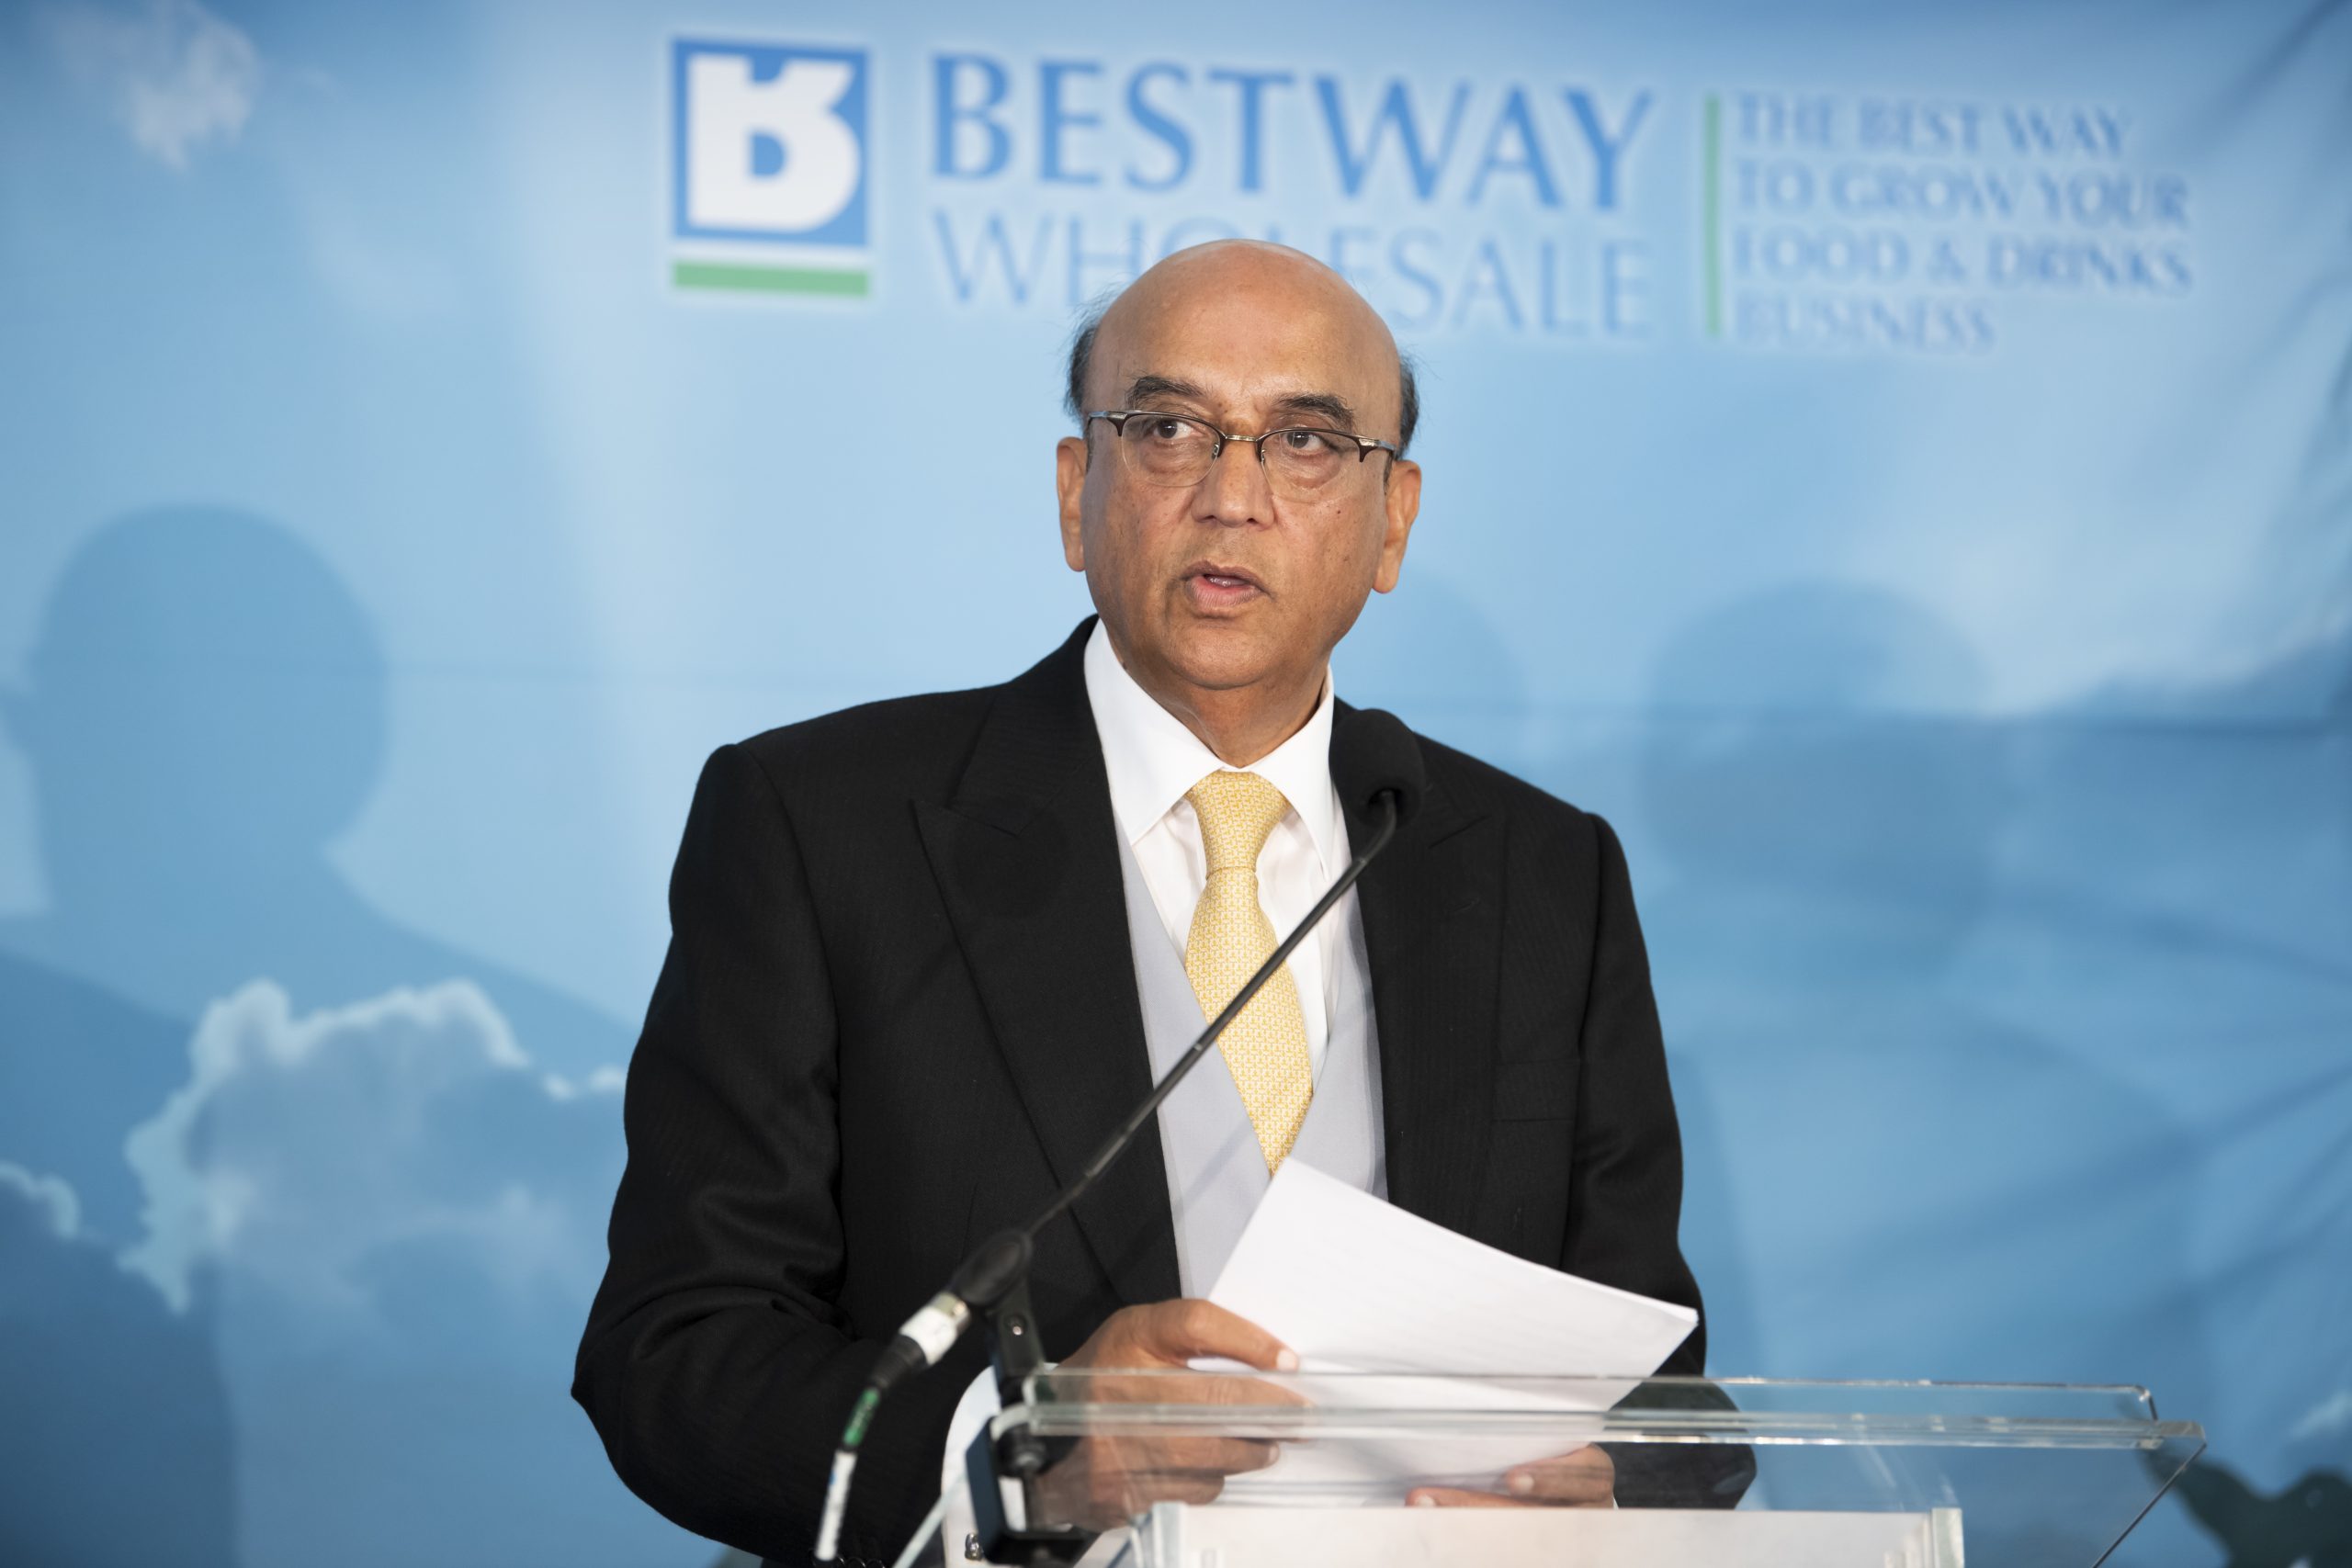 Bestway raises £2.05 million for Pakistan flood relief